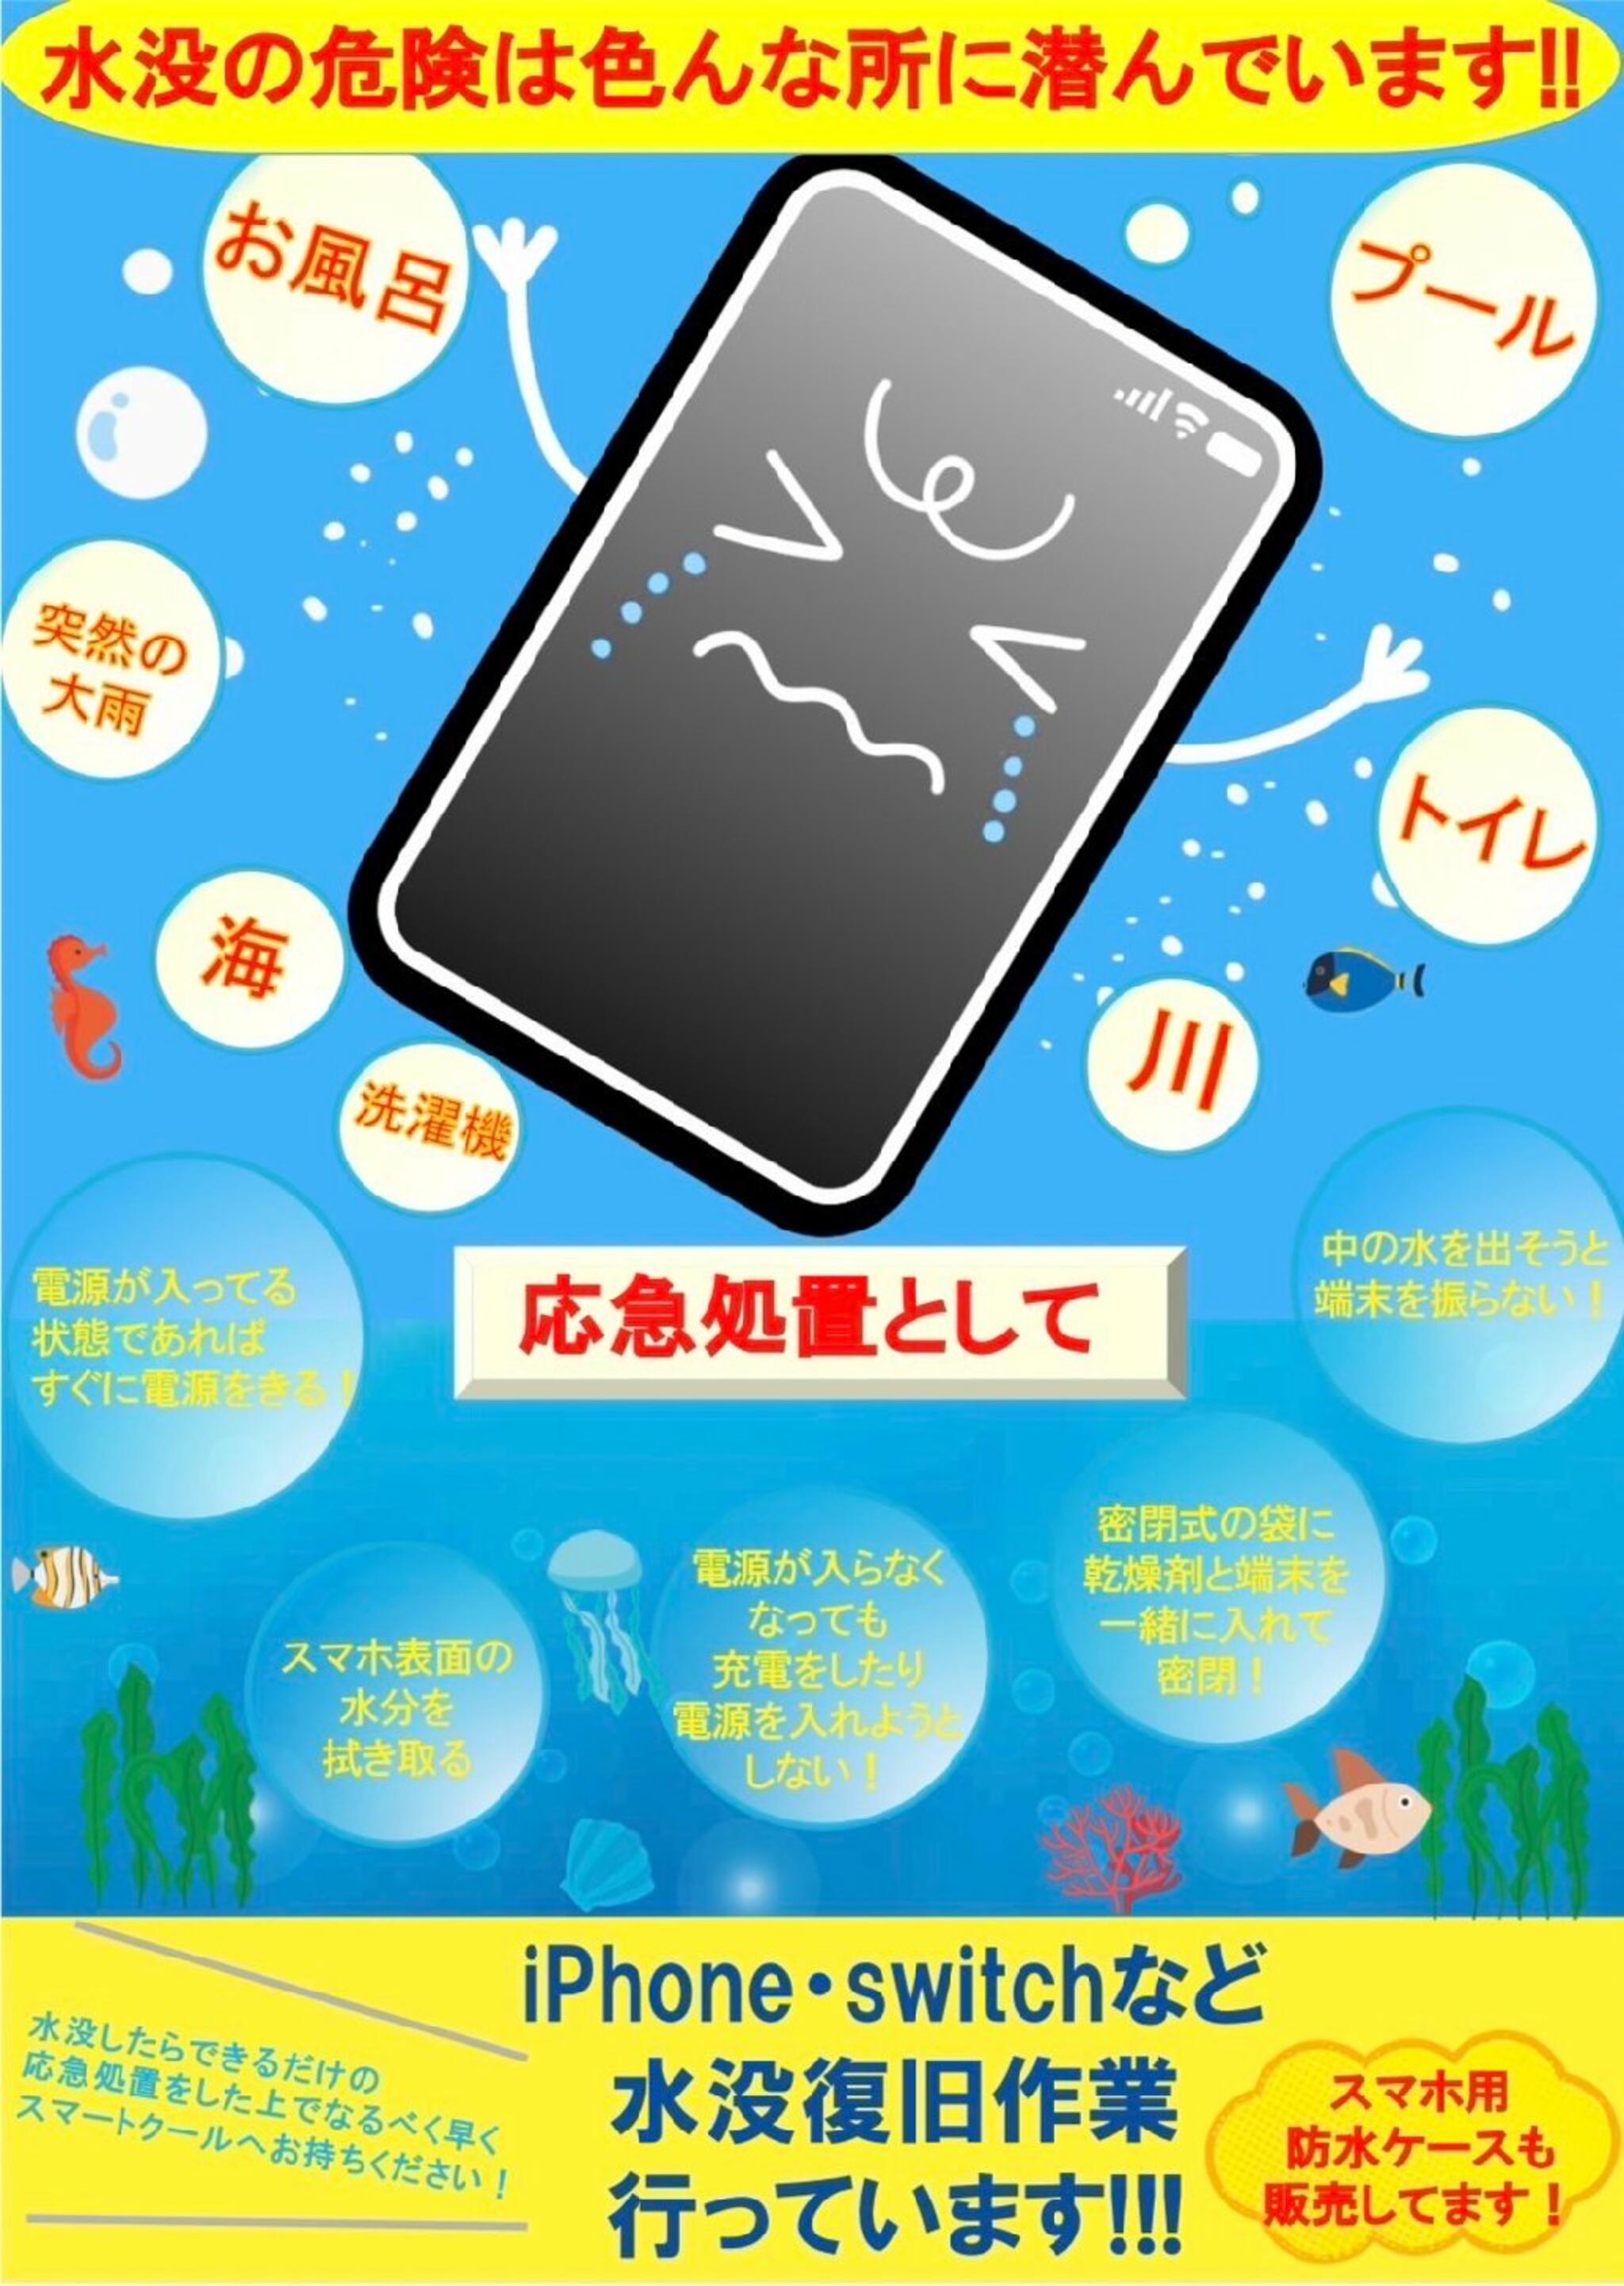 iPhone・iPad・Switch修理店 スマートクール イオンモール広島祇園店からのお知らせ( 水辺 で使用する際は水没にご注意ください！！  )に関する写真